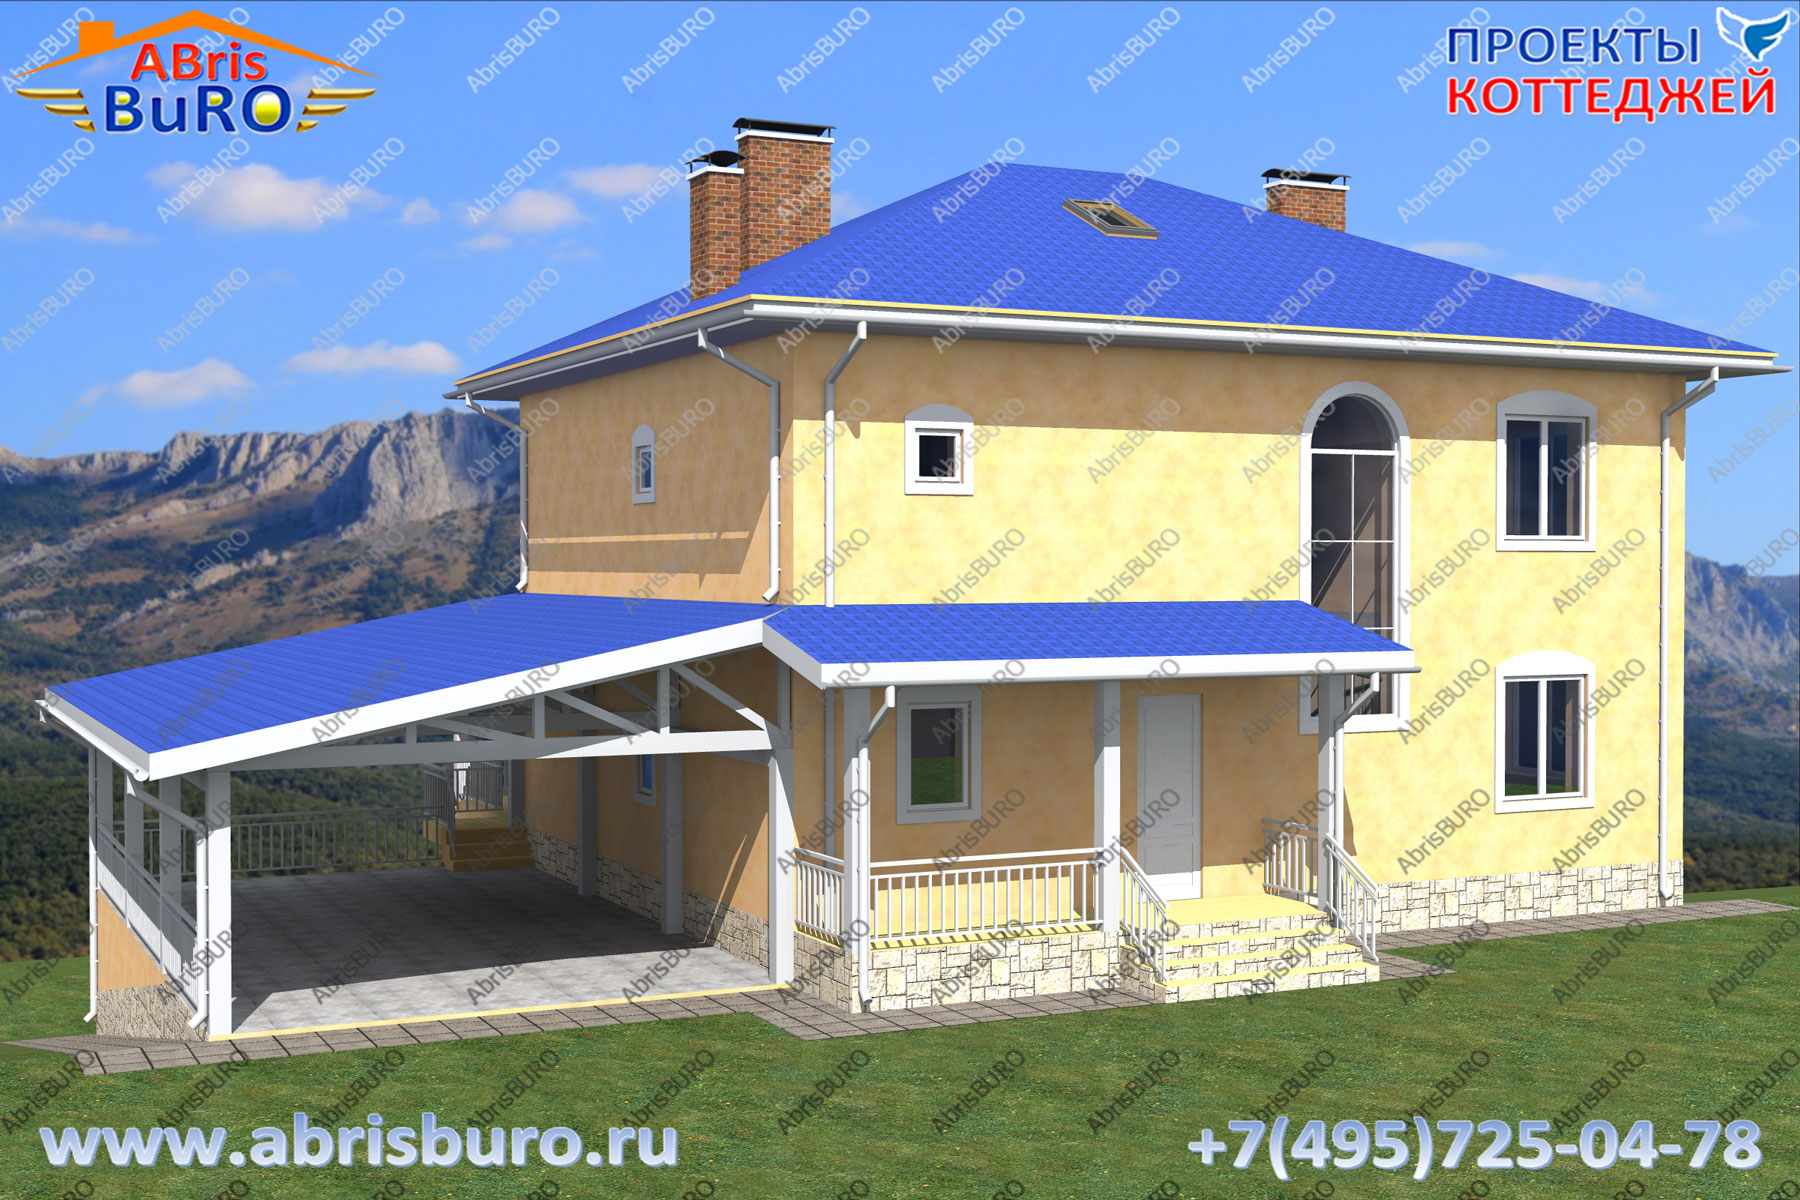 Проект дома на склоне с парковкой K3081-303 www.abrisburo.ru